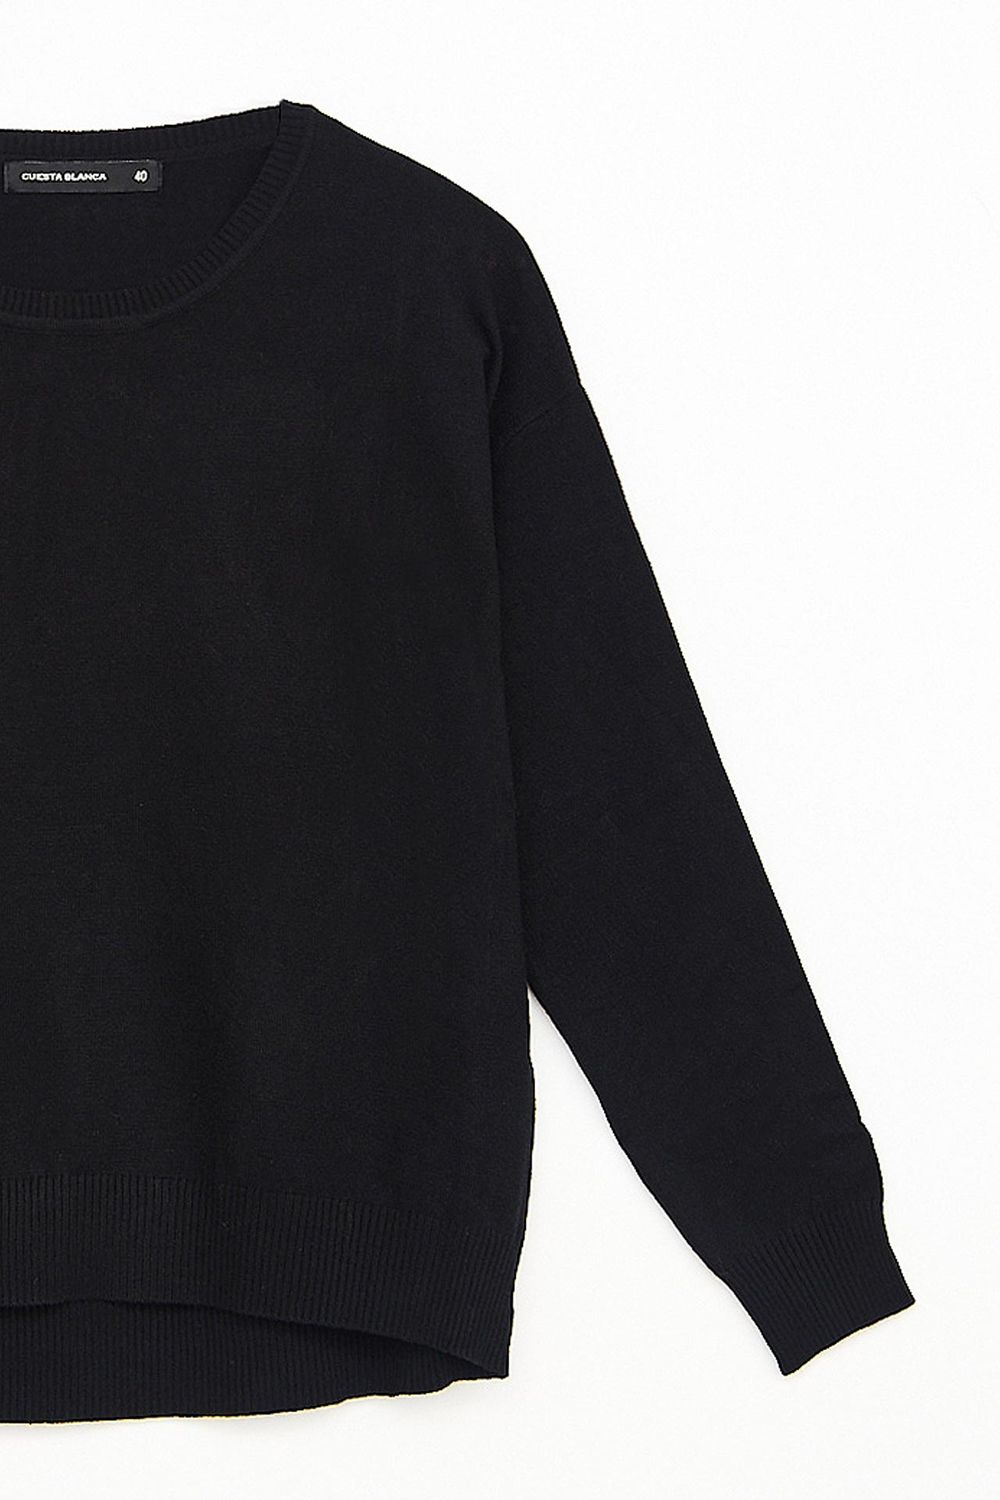 sweater-erminda-negro-40